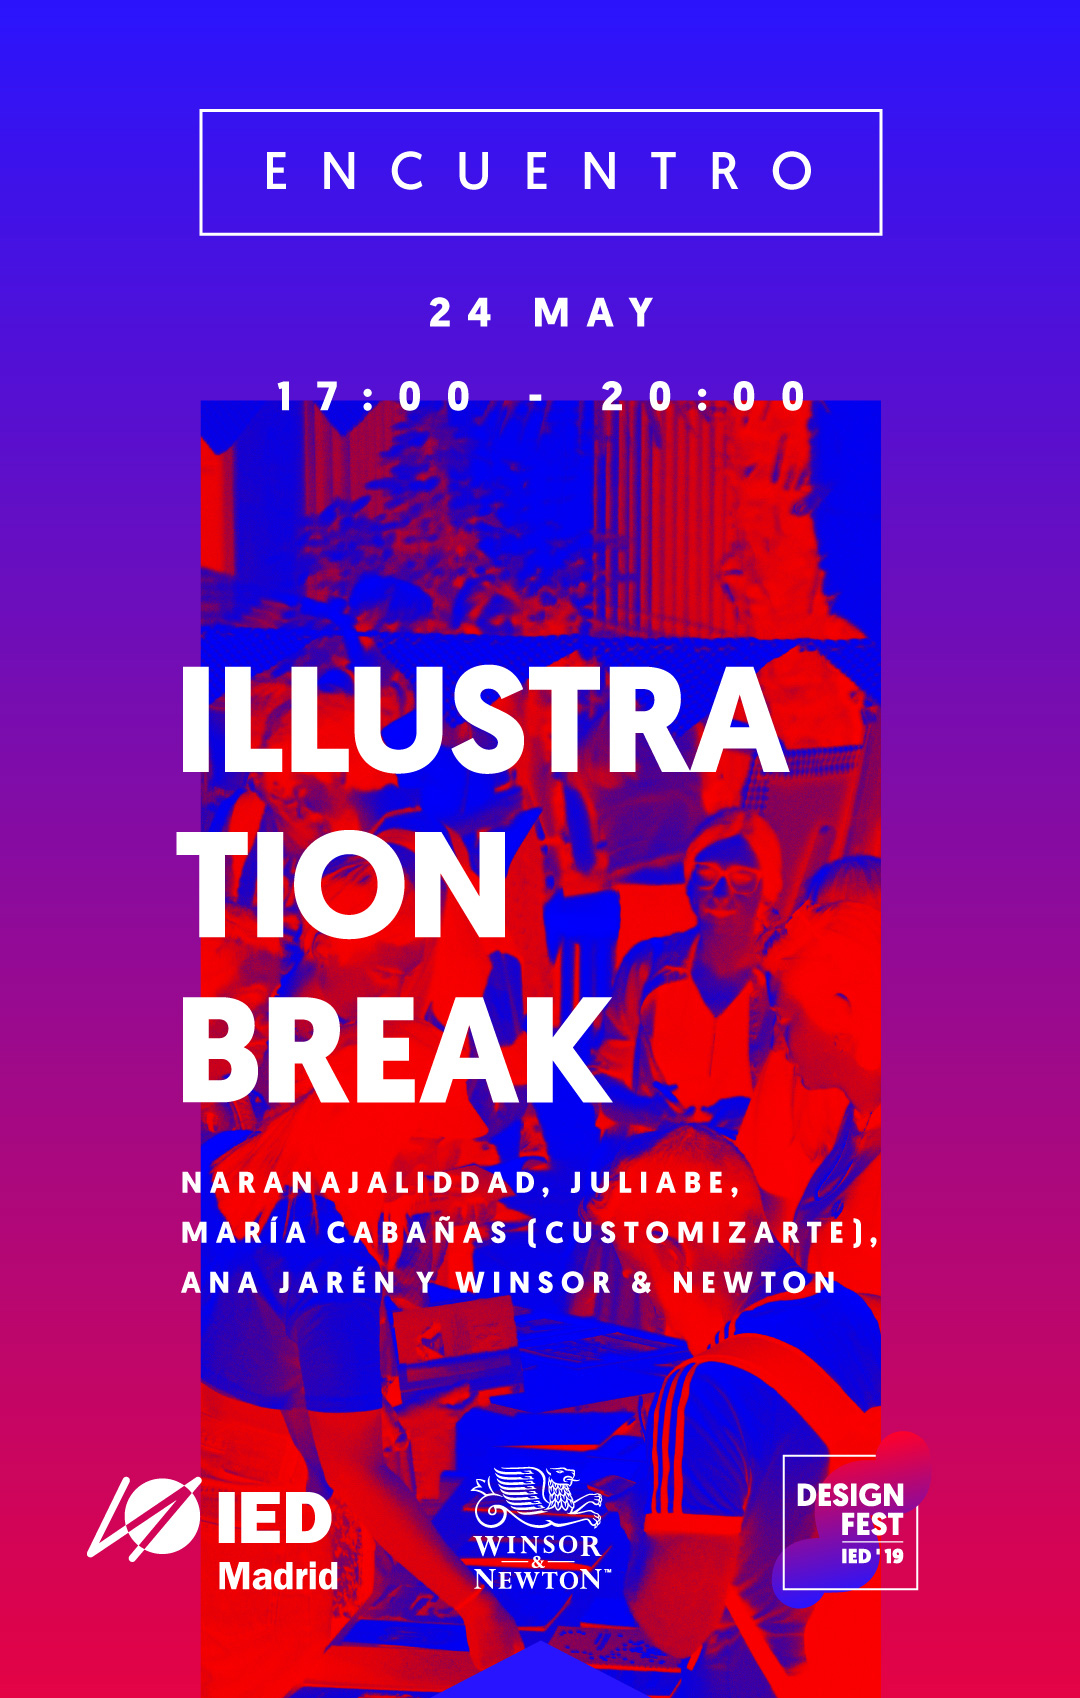 Illustration_Break_Design_Fest_19_IED_Stories_1920X1080_02_recorte.jpg